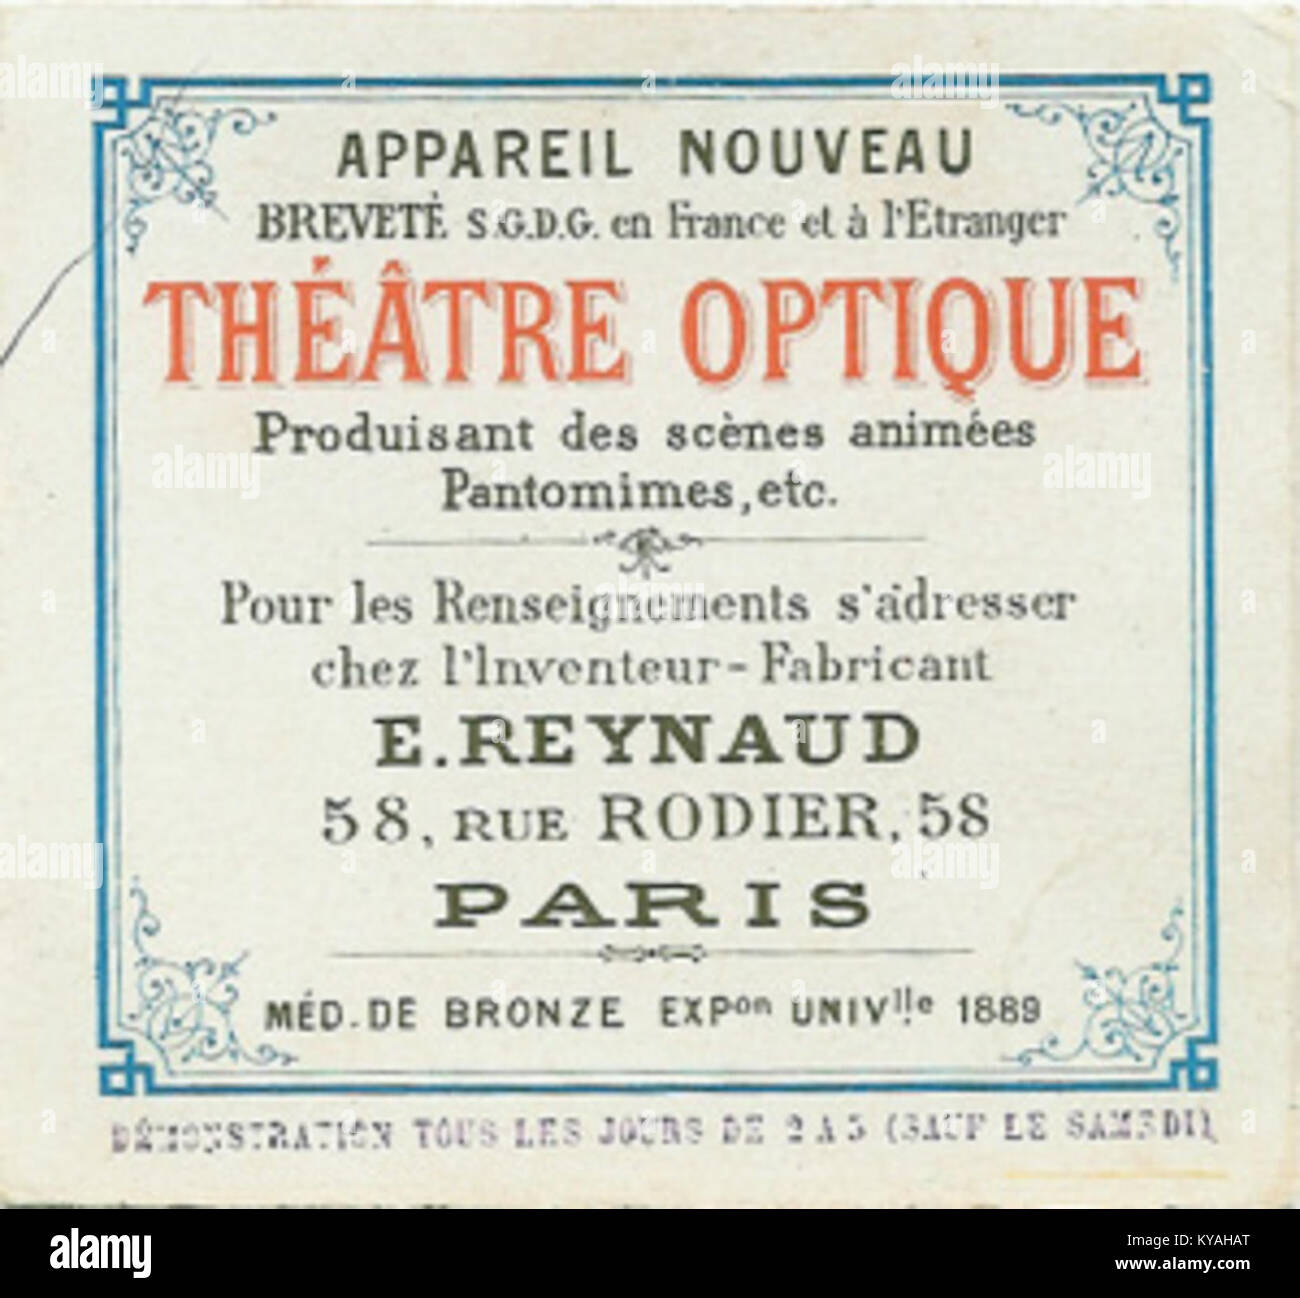 Théâtre Optique advertisement Stock Photo